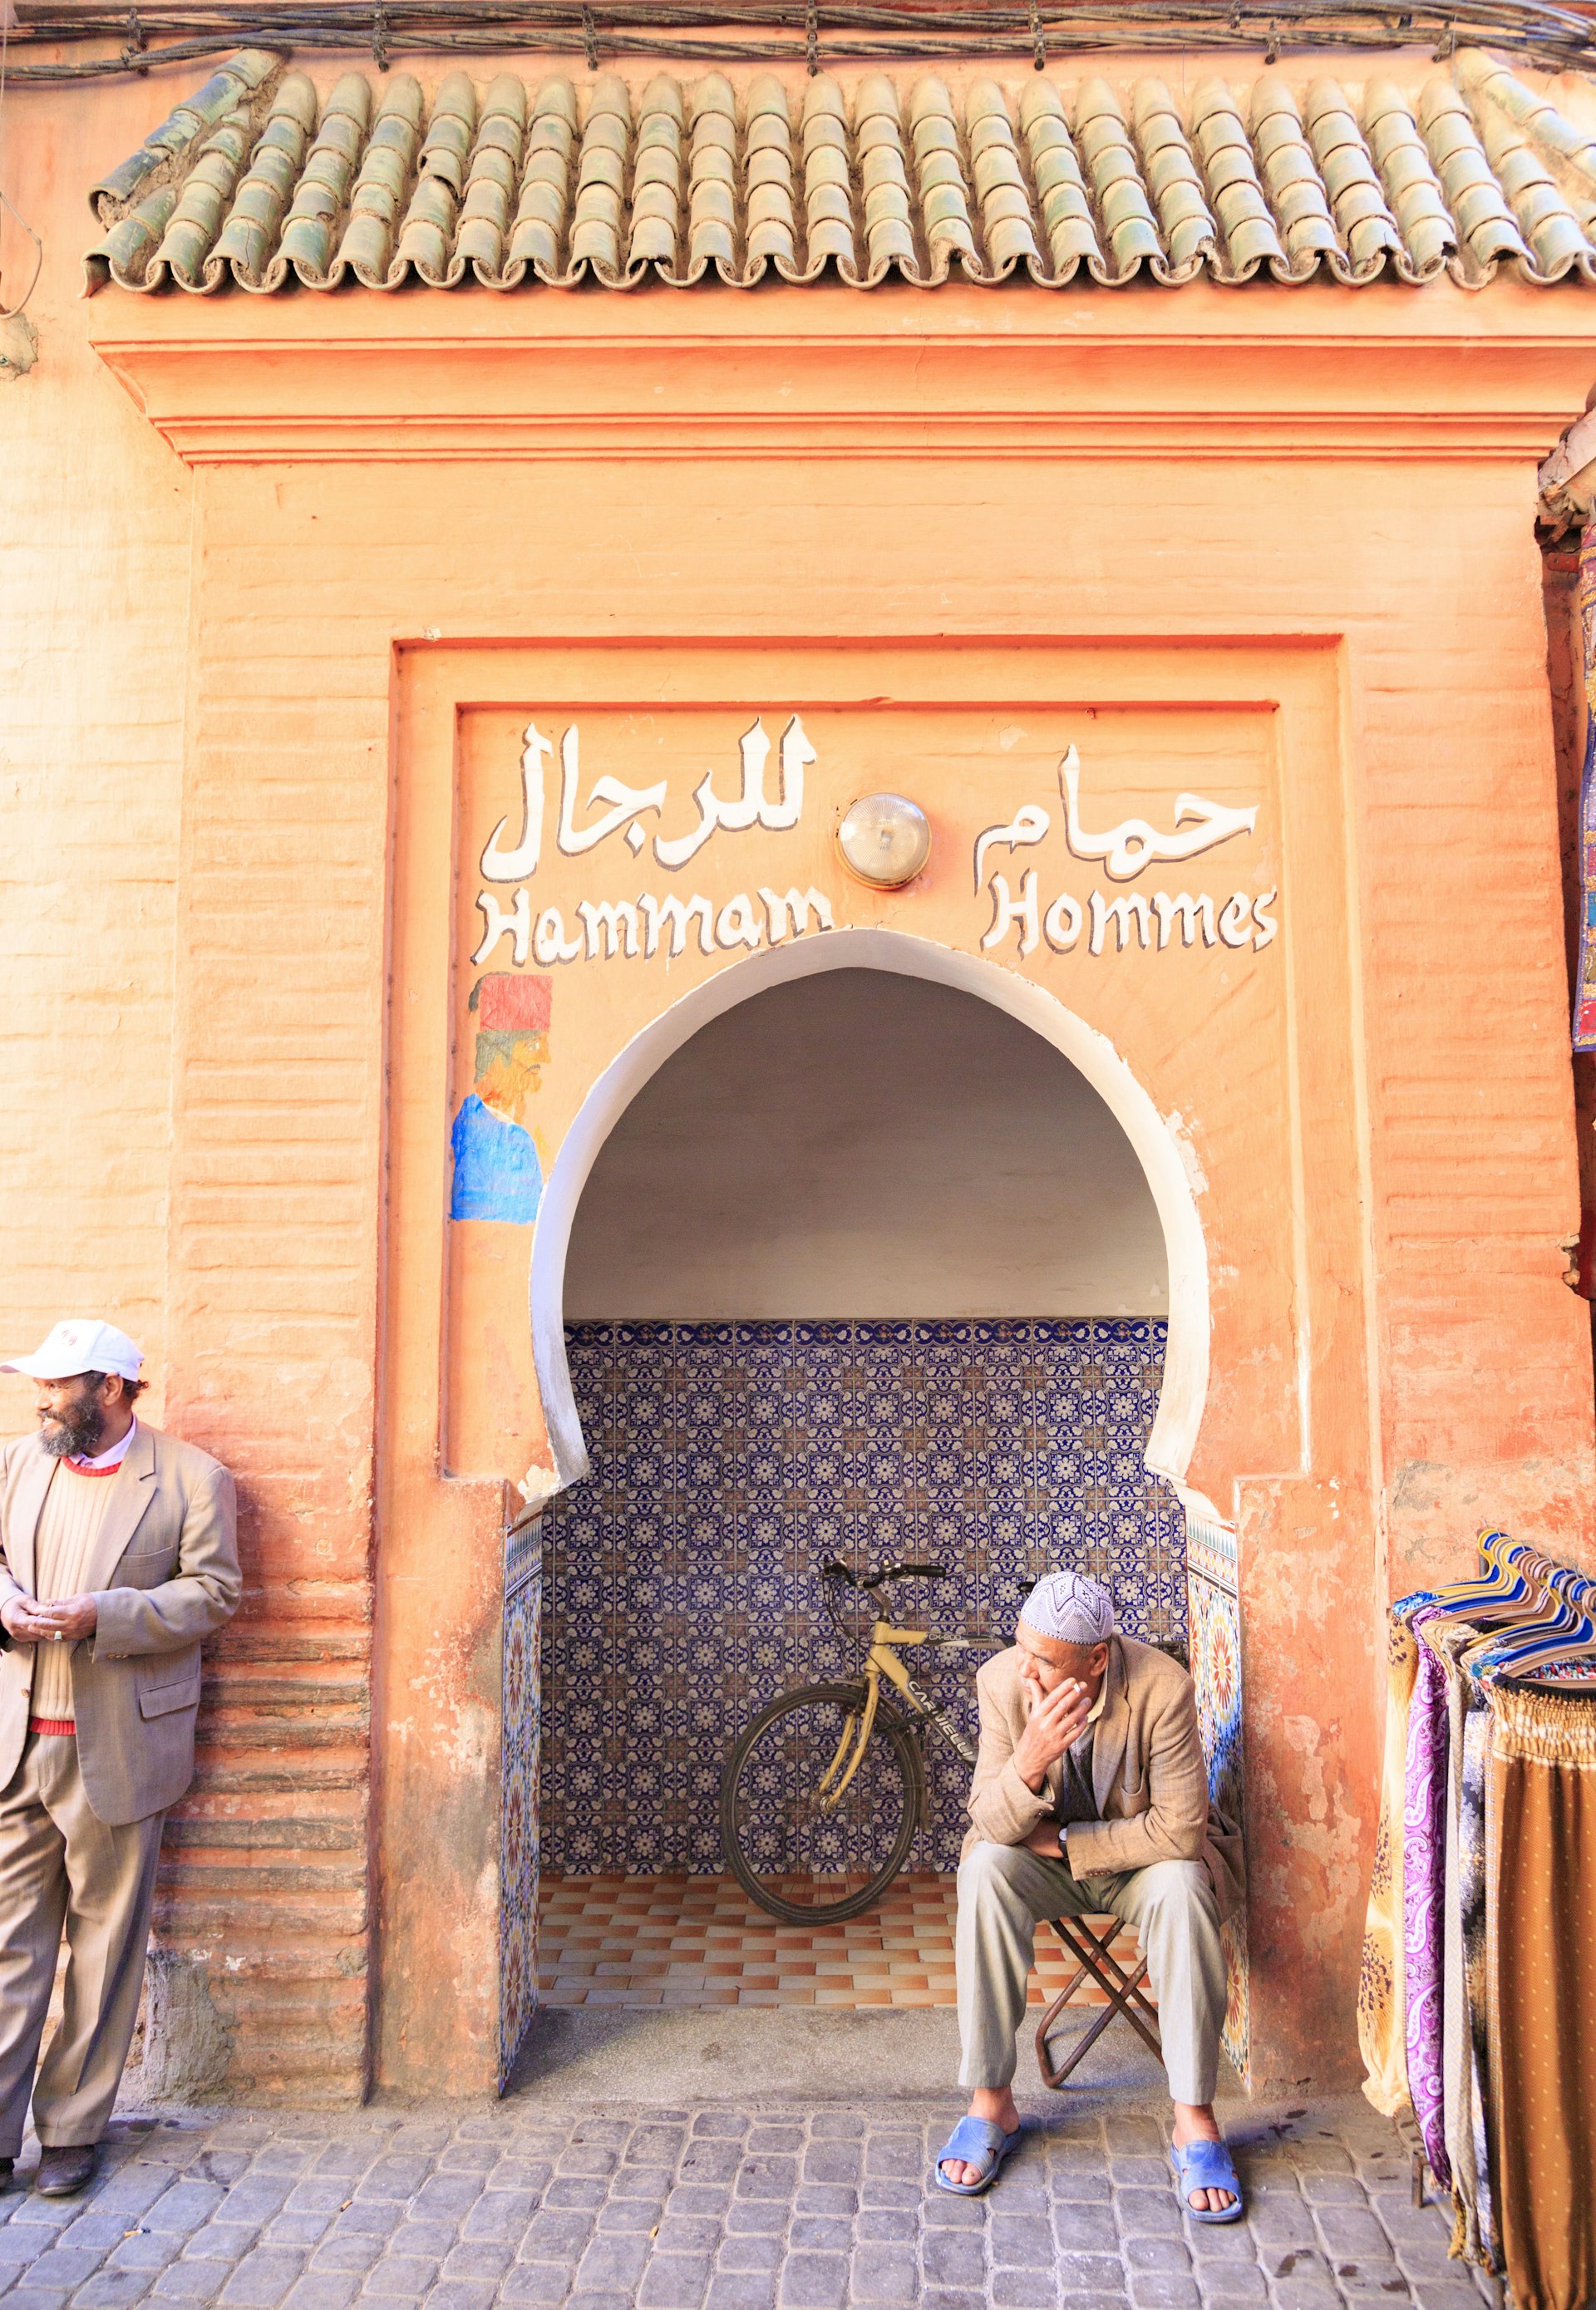 Entrance to a men's hammam in the medina of Marrakesh, Morocco